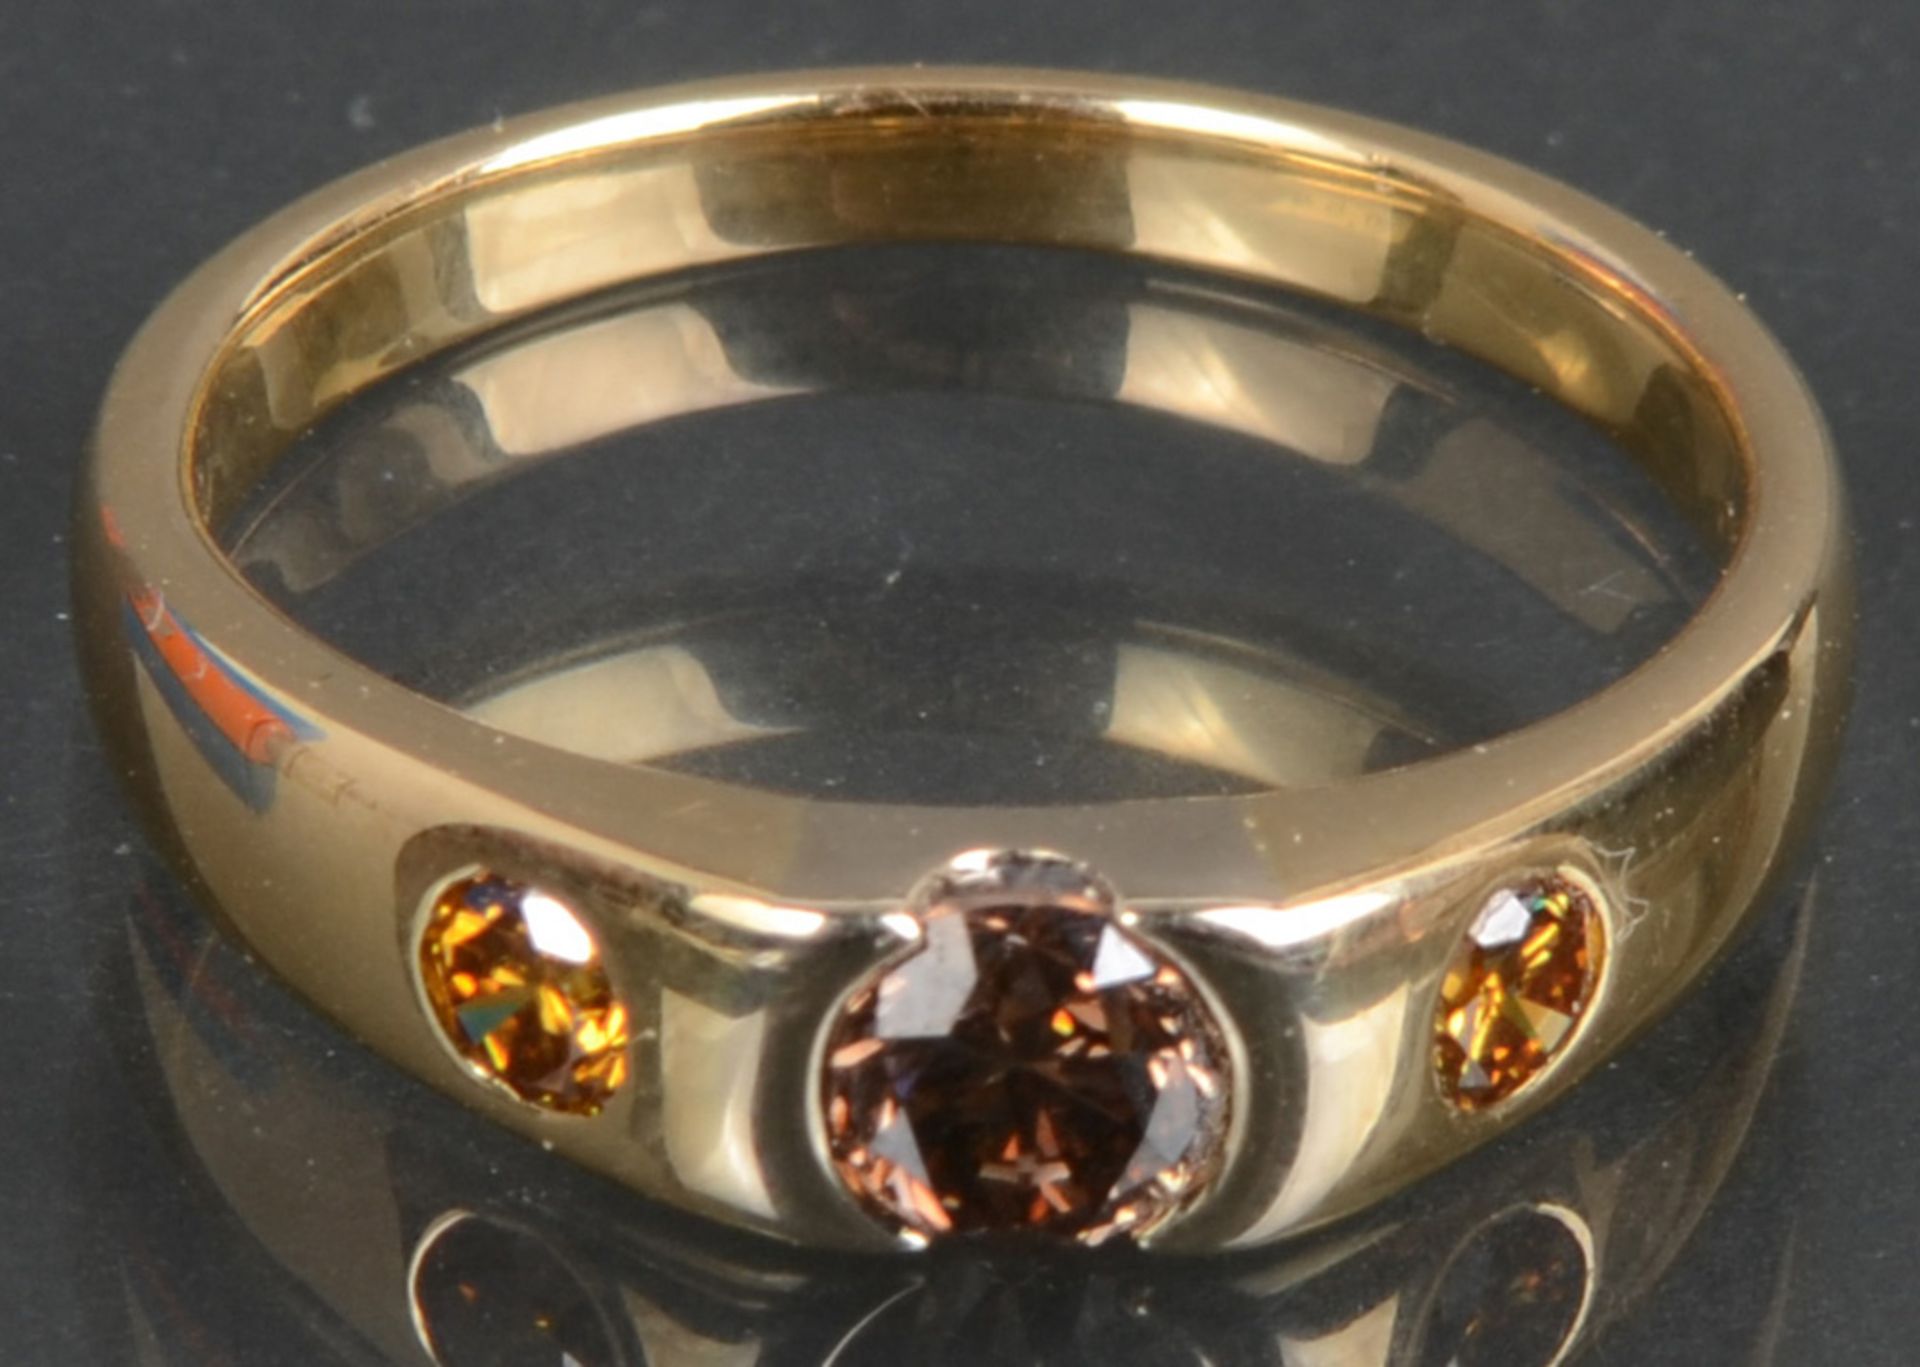 Damenring. 18 ct Gold, besetzt mit farbigen Brillanten, ca. 0,54 ct, ca. 5,8 g, Ringgröße 59.